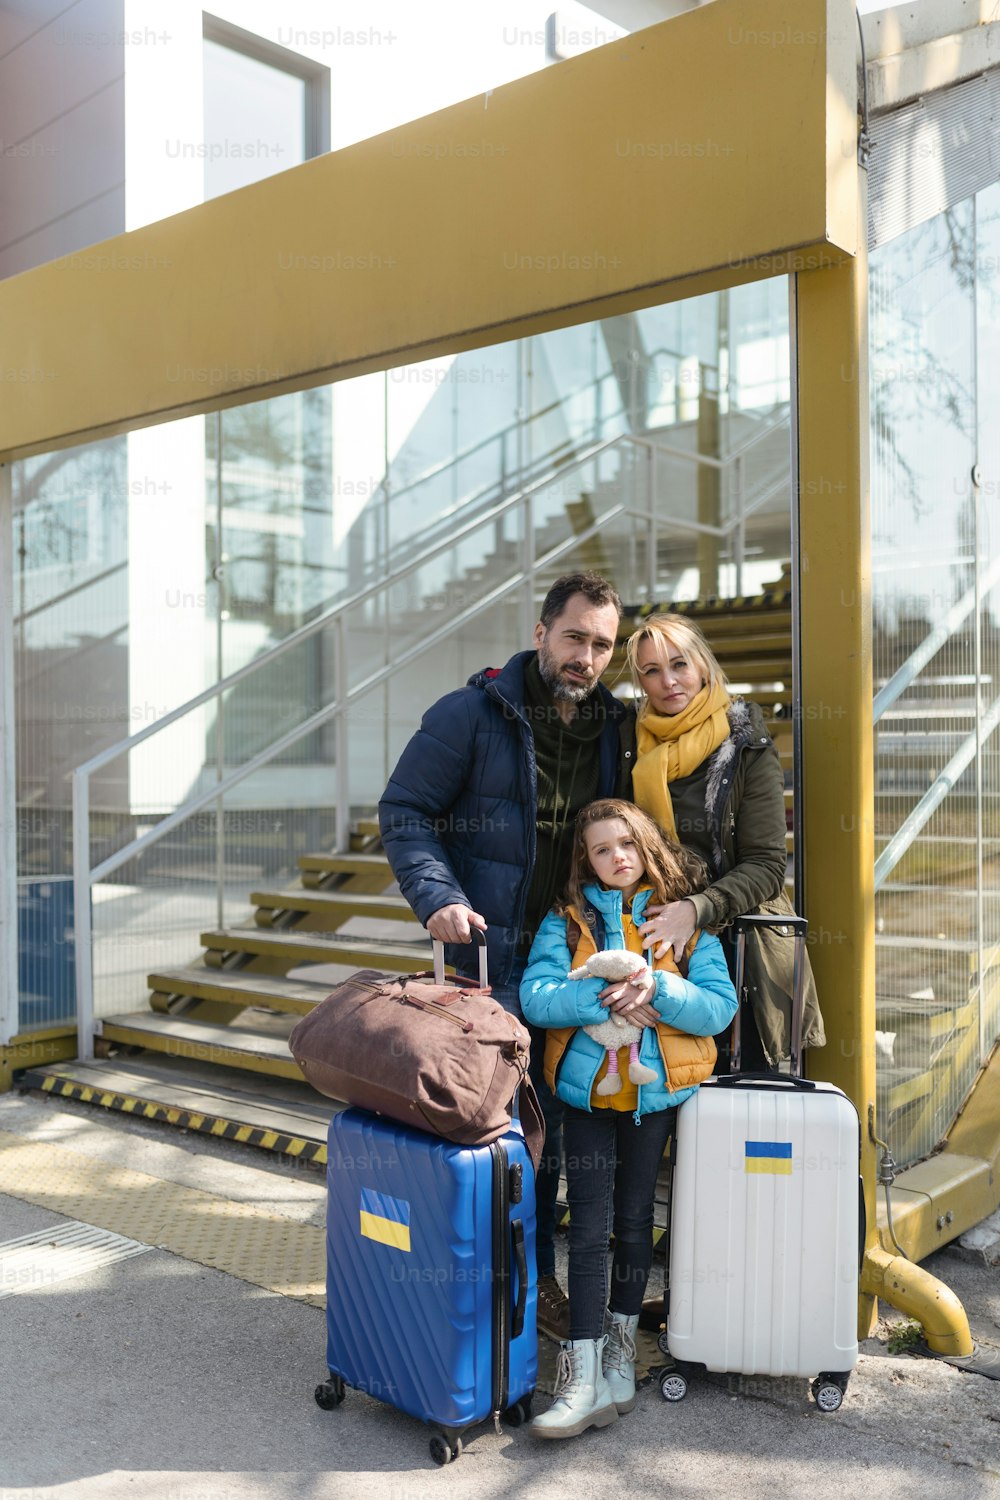 Una familia de refugiados ucranianos con equipaje en la estación de tren juntos, concepto de guerra ucraniano.